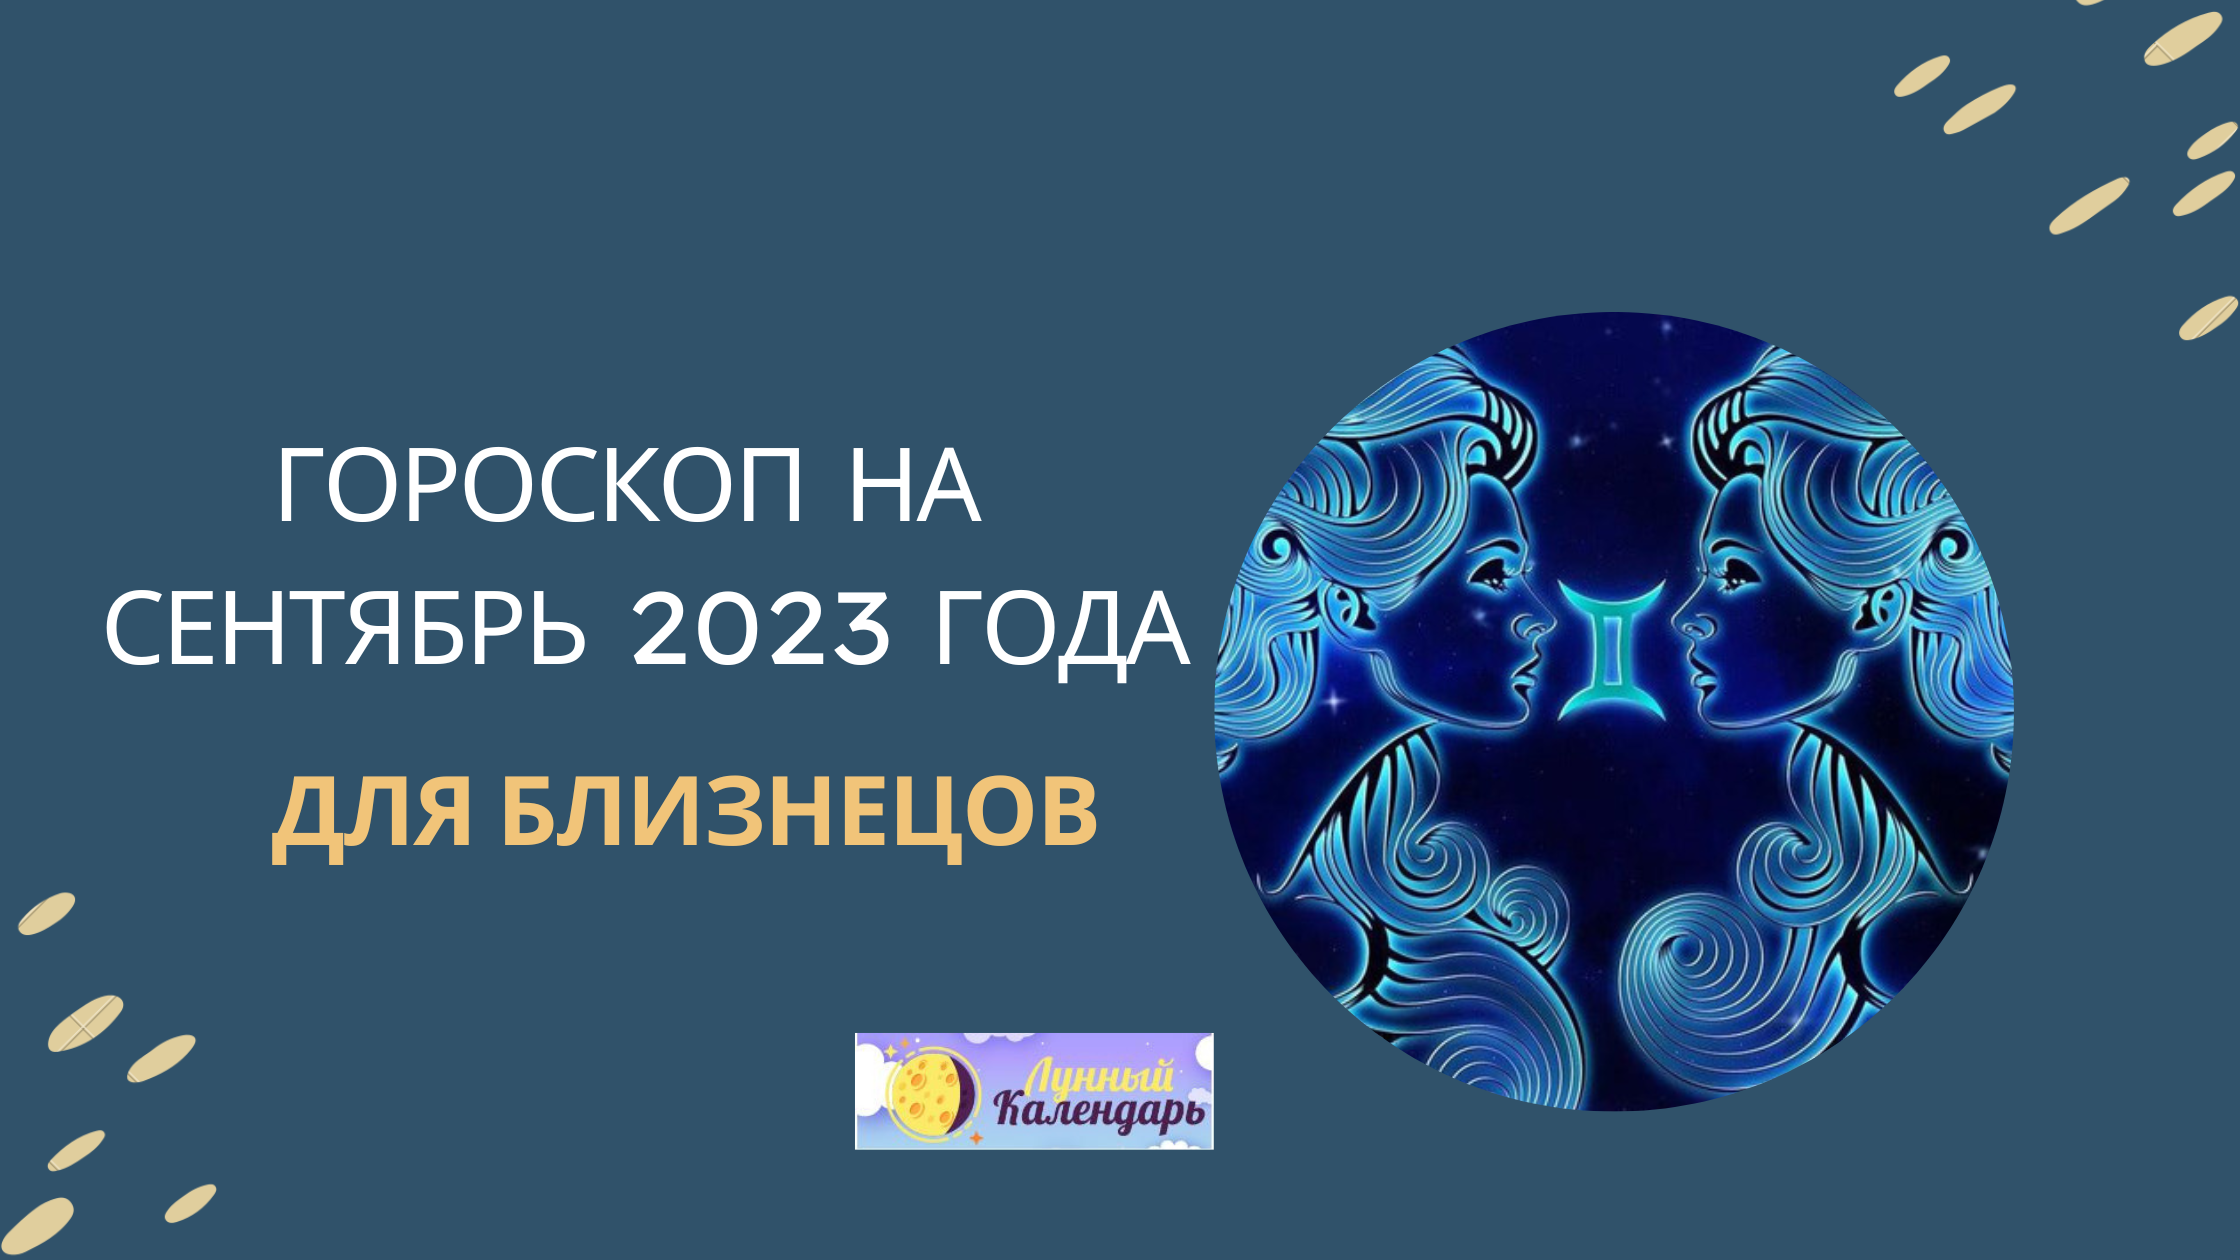 Гороскоп на сентябрь 2023 года для Близнецов